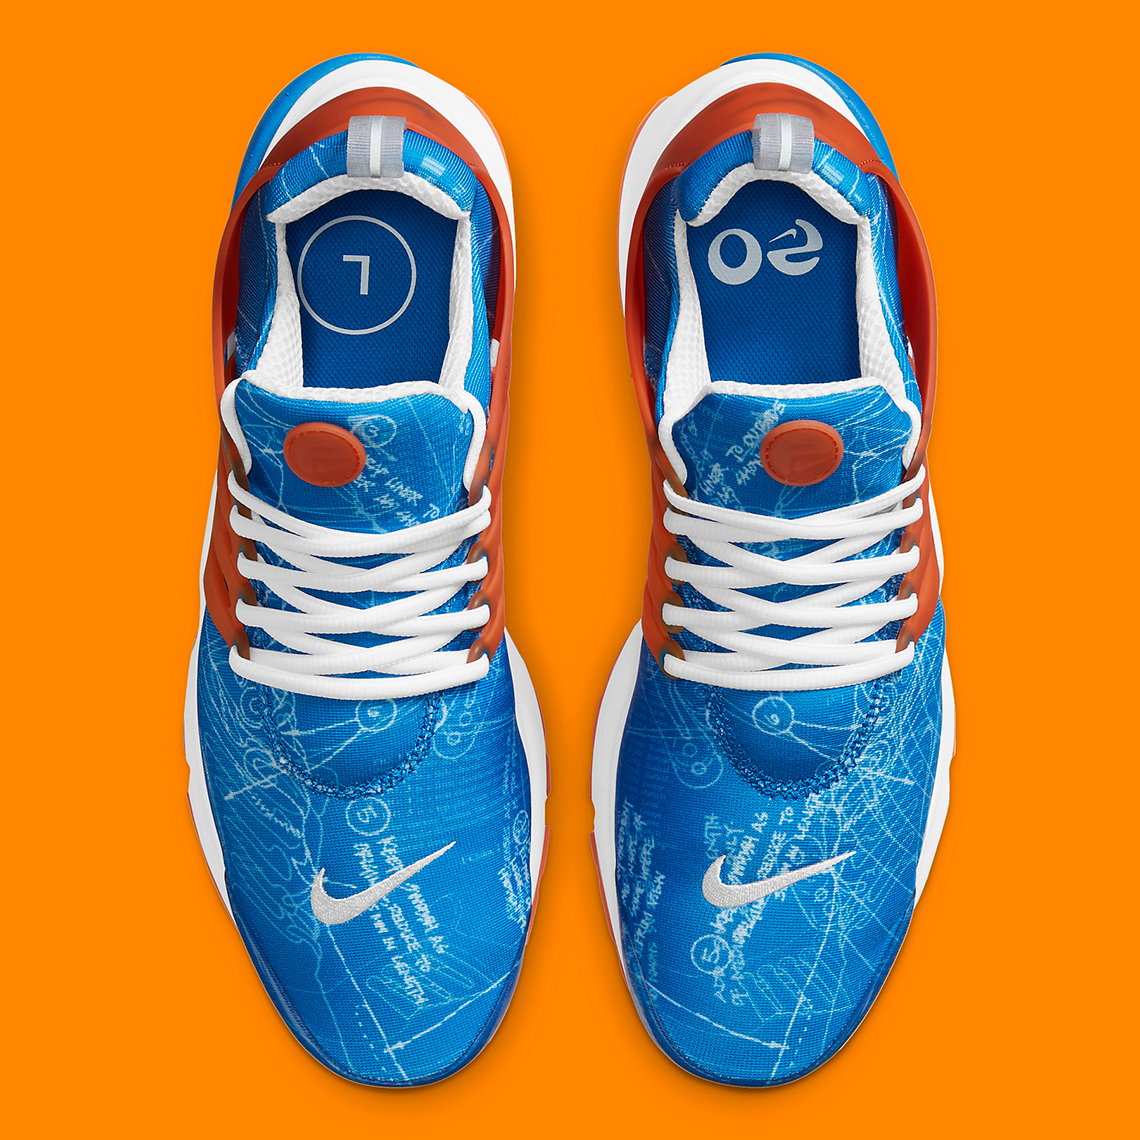 Ungleiche Farben tauchen auf dem Nike LeBron 20 Nike Lifer auf Blue Orange Cj1229 401 7